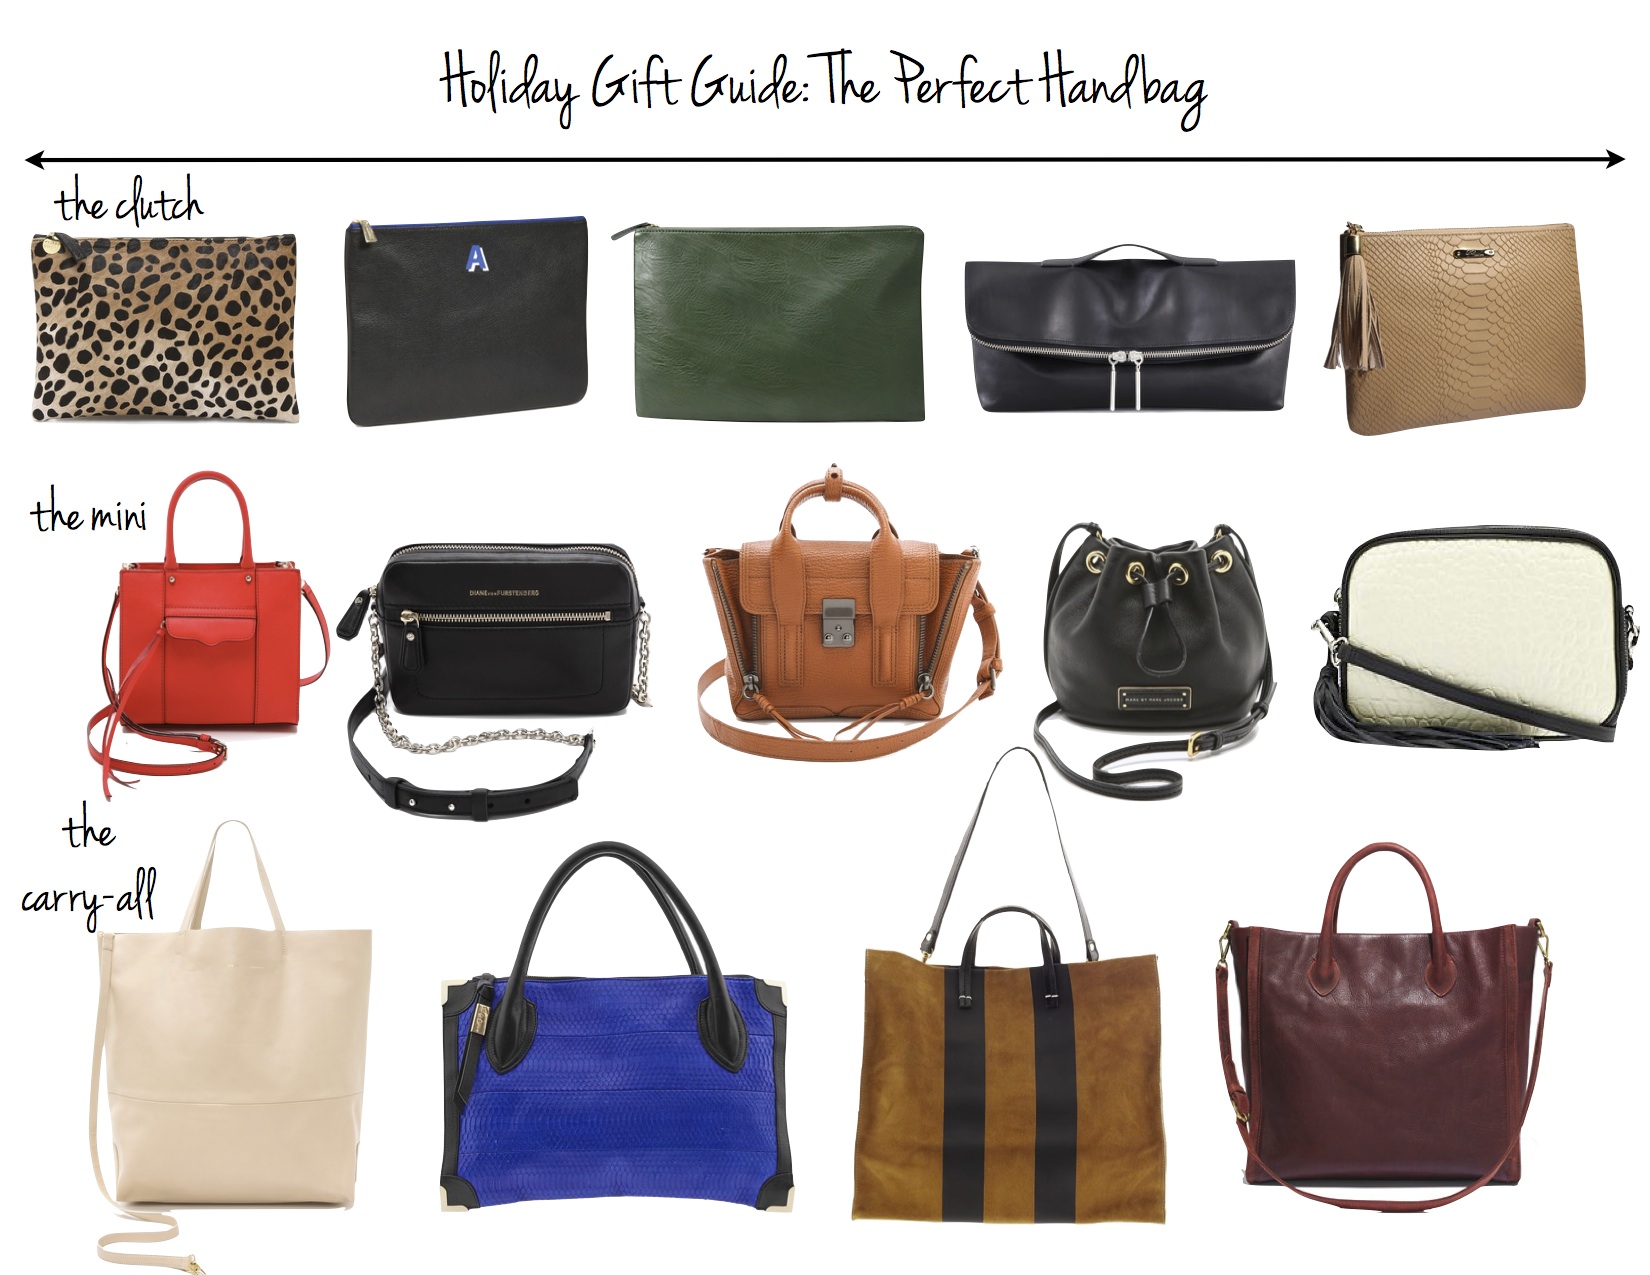 Gift Guide: The Perfect Handbag for Her - VeryAllegra